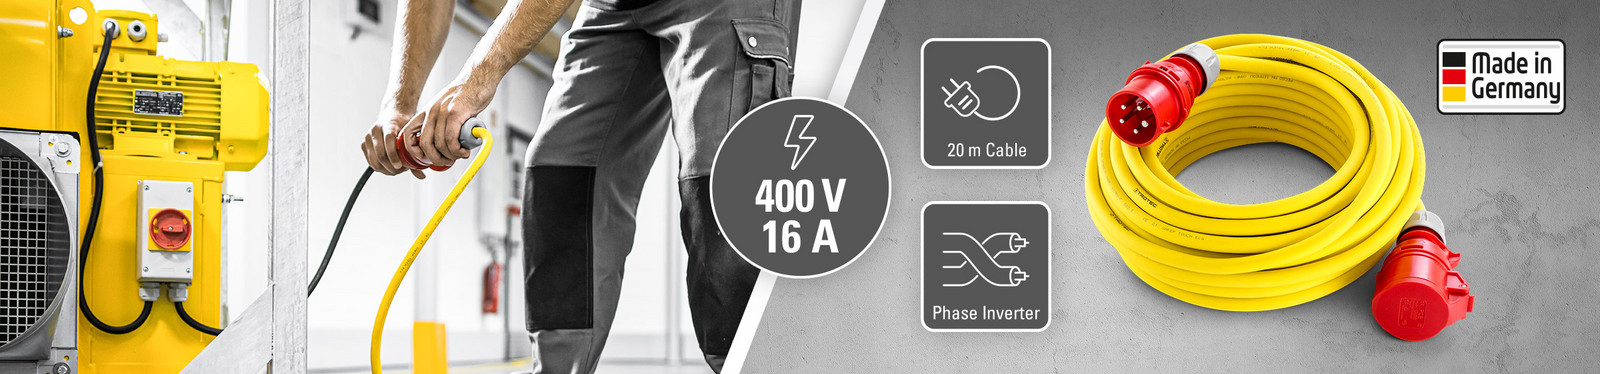 Profesionální prodlužovací kabely 400 V (16 A) – Made in Germany